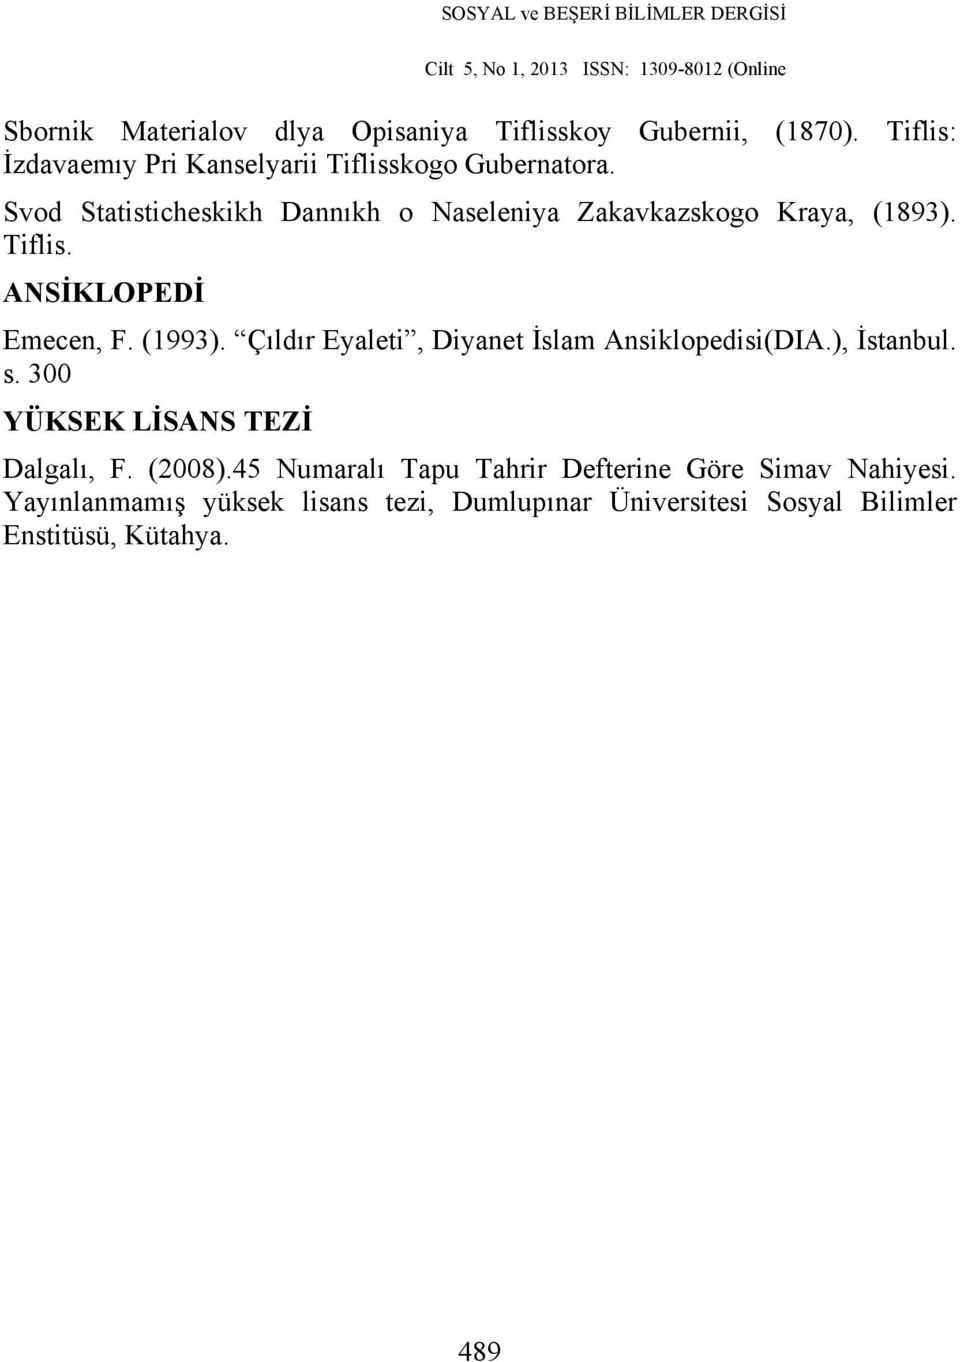 Çıldır Eyaleti, Diyanet İslam Ansiklopedisi(DIA.), İstanbul. s. 300 YÜKSEK LİSANS TEZİ Dalgalı, F. (2008).